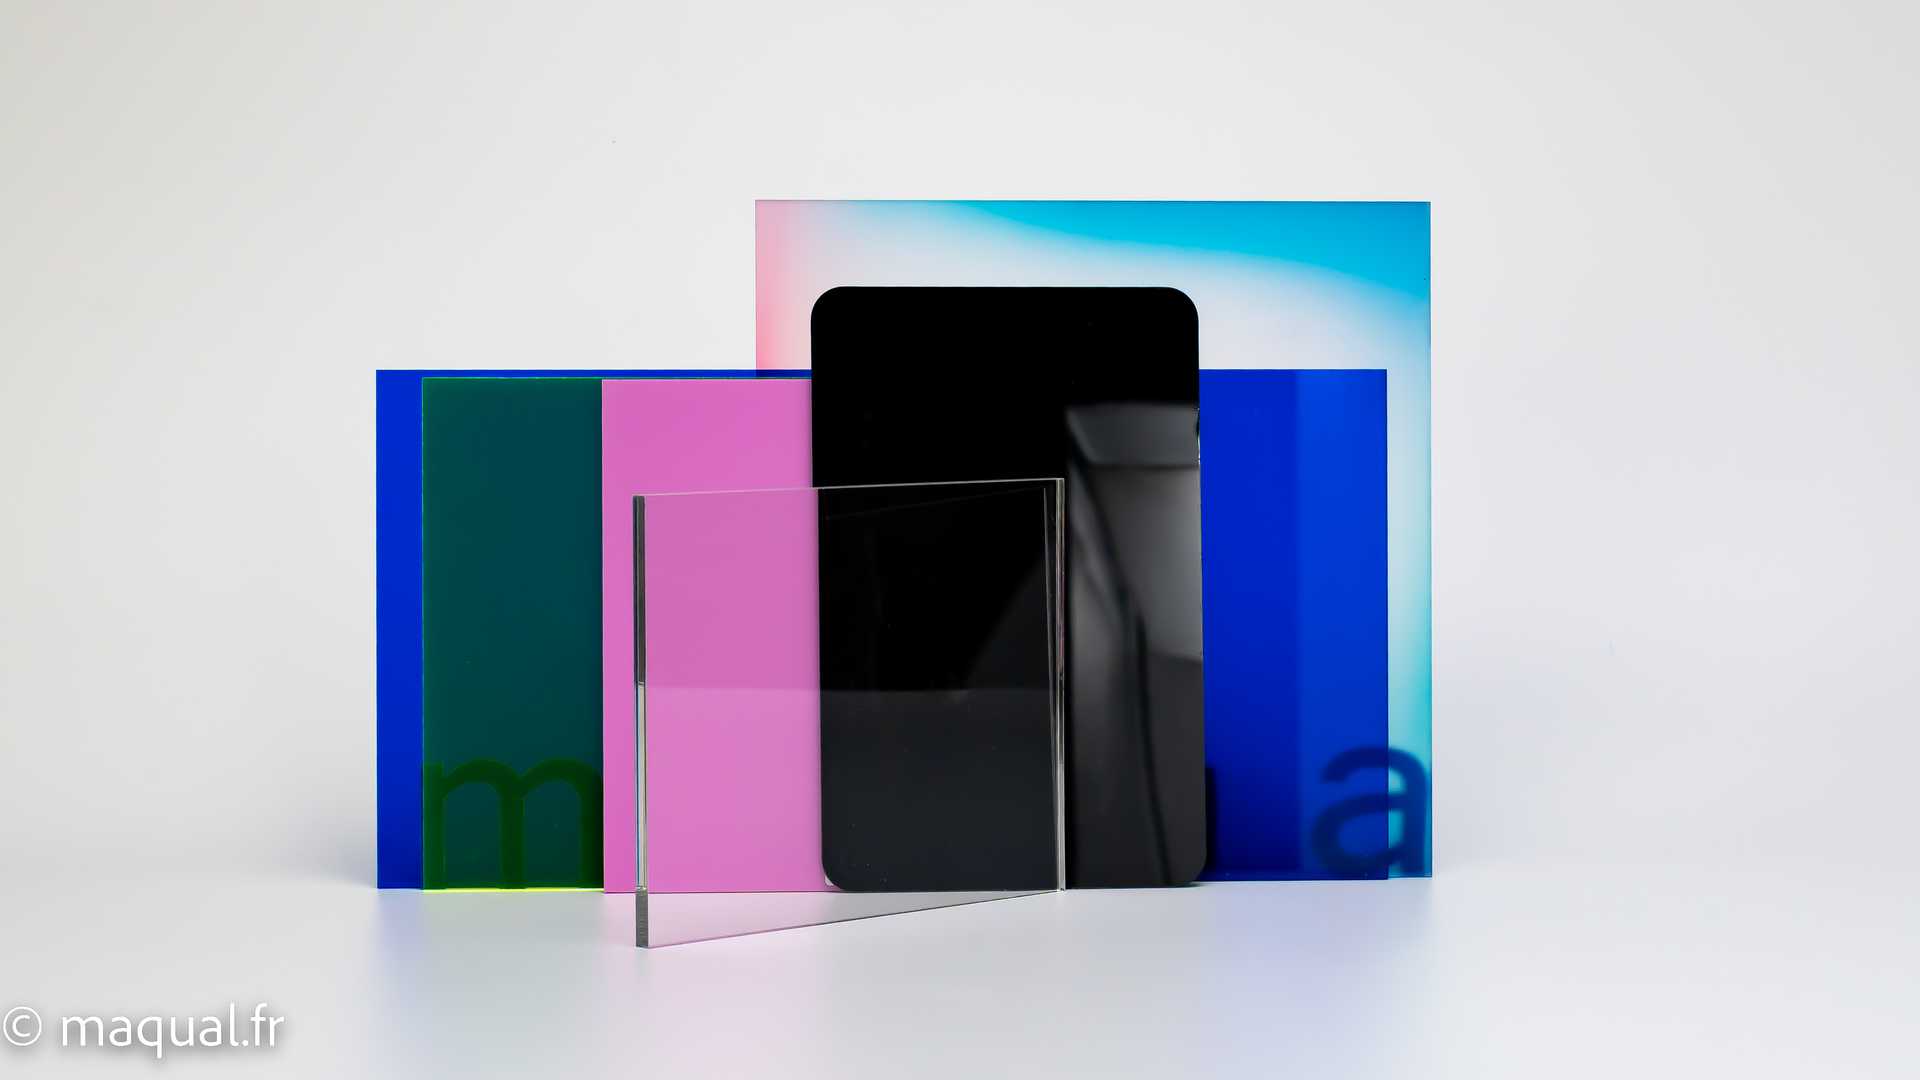 Feuille De Plexiglas Acrylique Transparent, Optique, Taille